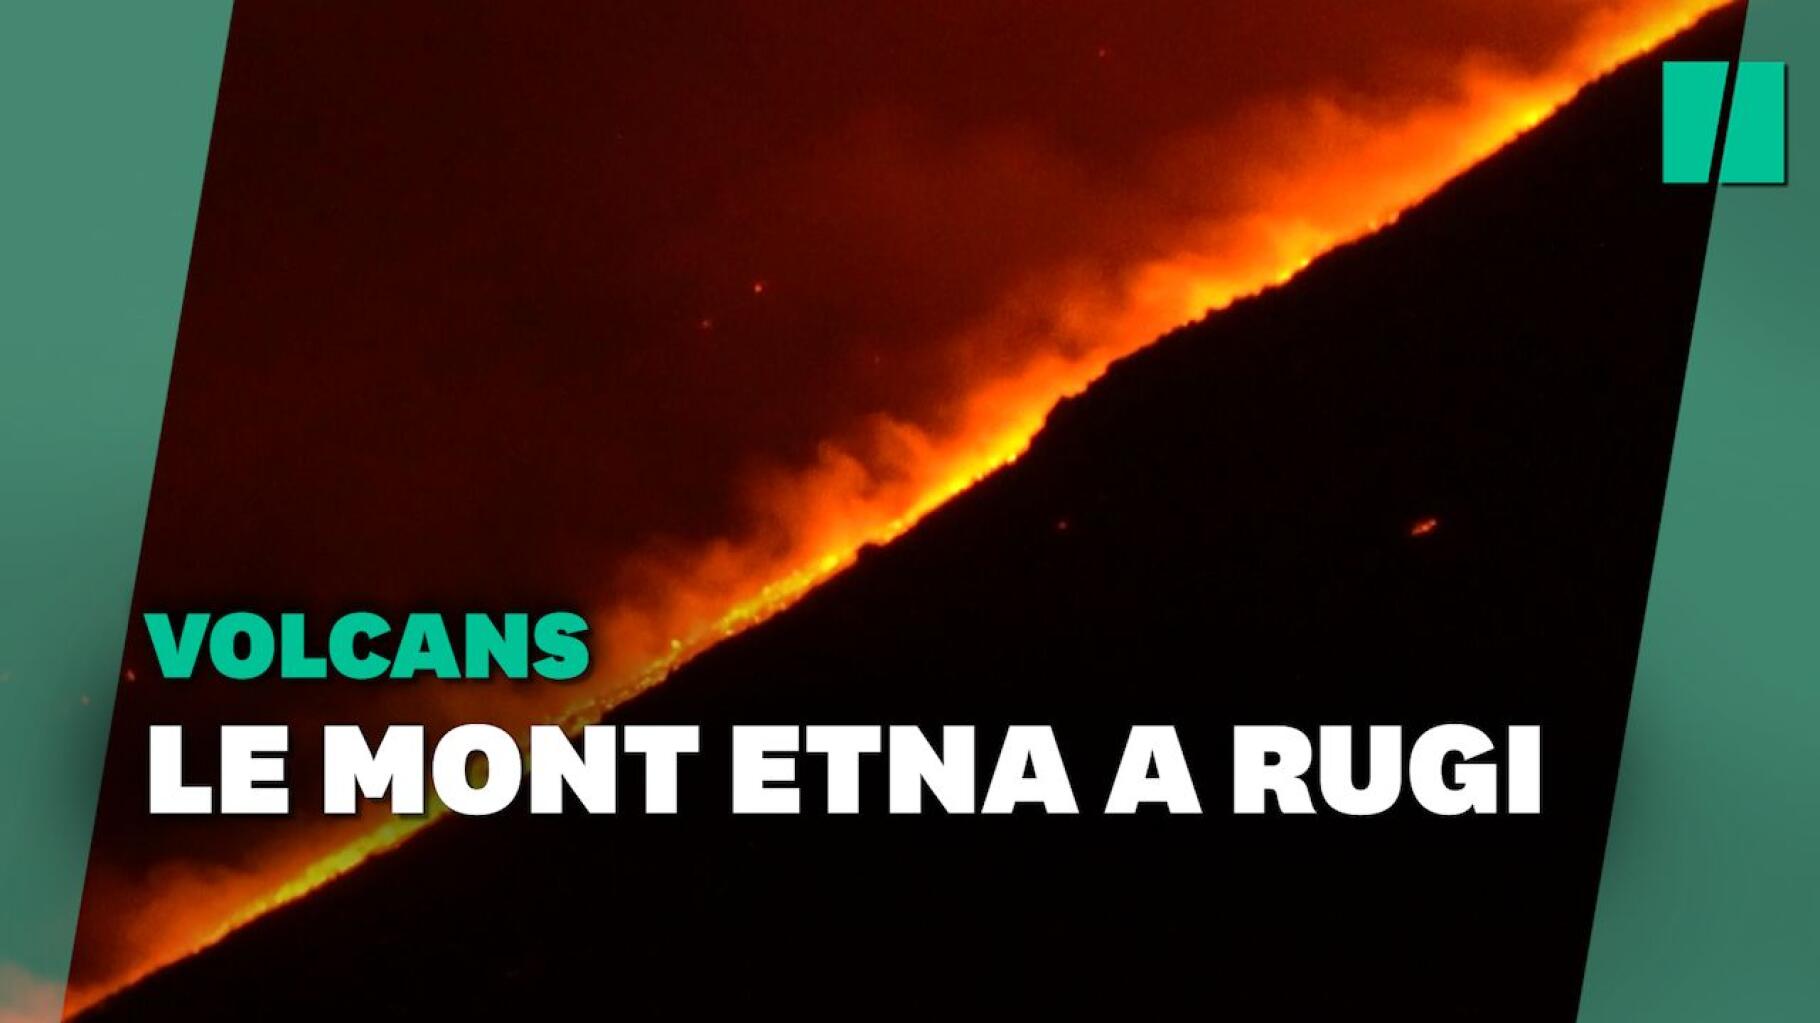 L'eruzione del vulcano Etna ha rappresentato uno spettacolo impressionante per gli italiani